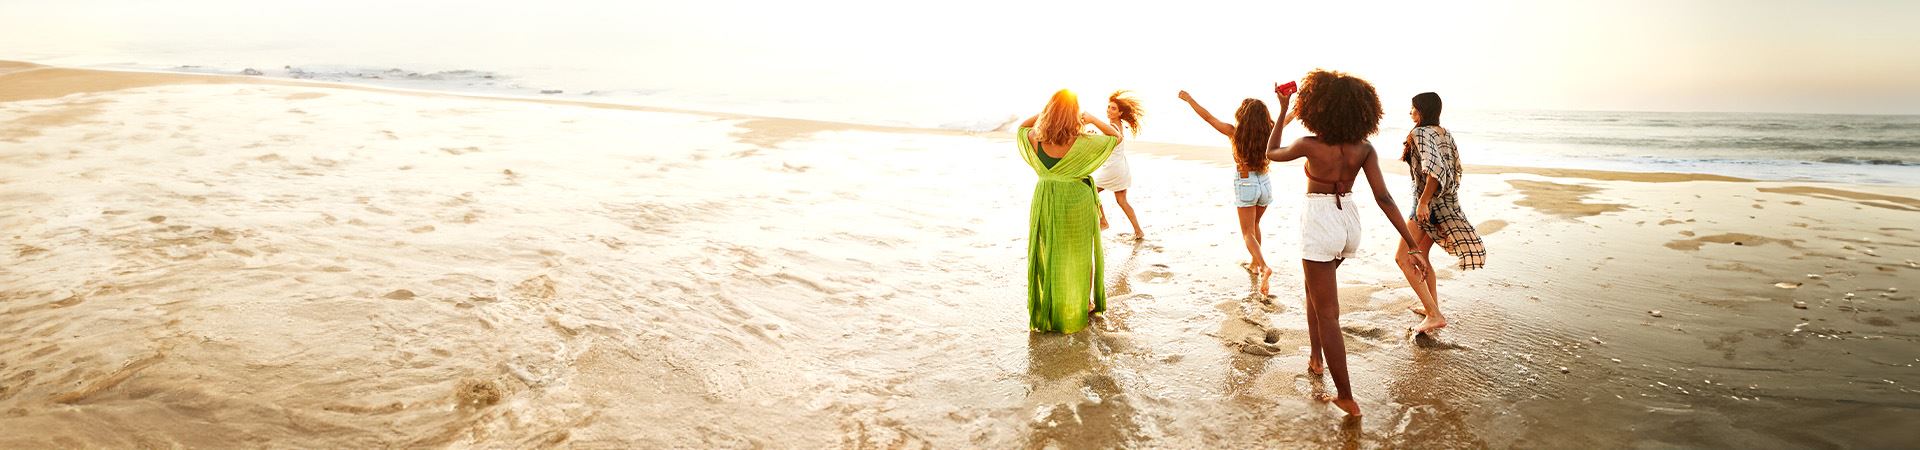 Esta imagem mostra cinco raparigas à beira mar. Uma delas está de braços no ar e outra está a correr. Todas vestem roupas leves e de verão. Ao fundo vê-se o mar e a luz indica que é pôr do sol.